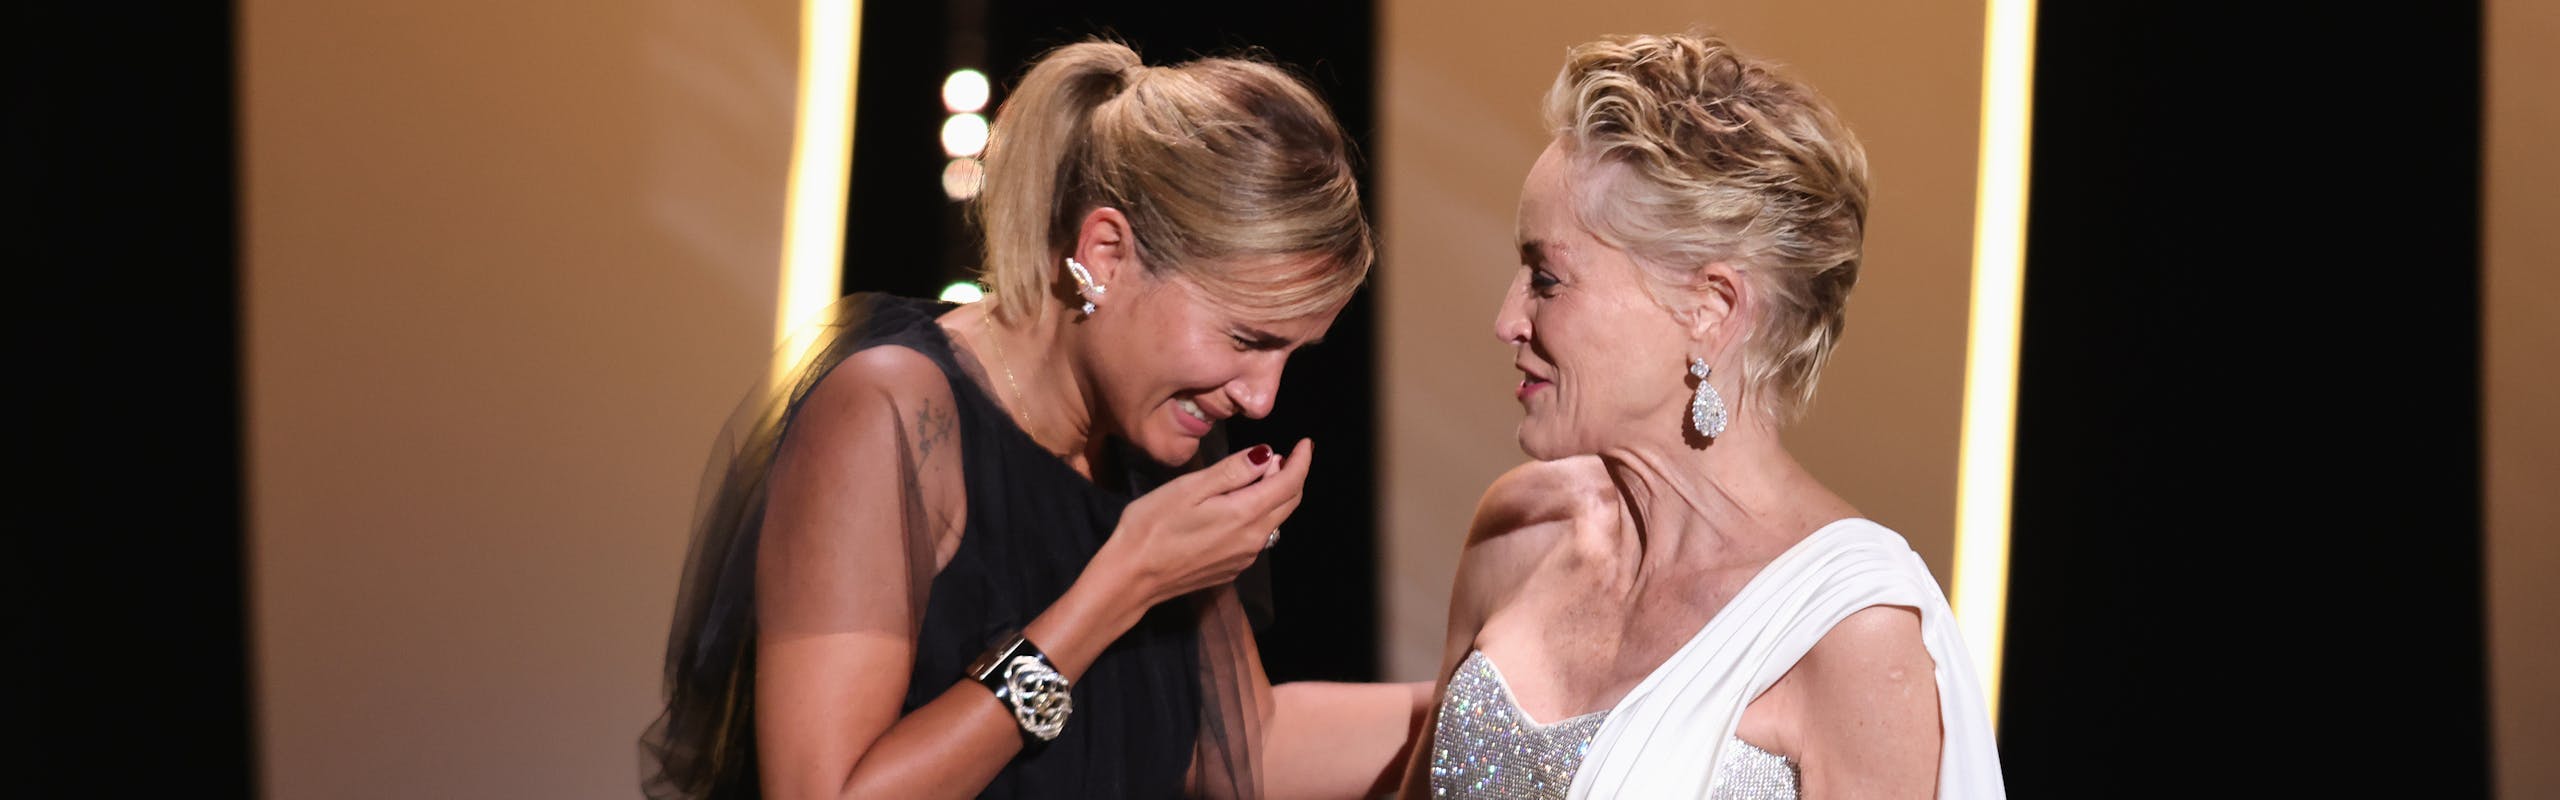 Julia Ducournau reçoit la Palme d'or des mains de Sharon Stone, Cannes 2021 - Getty Images